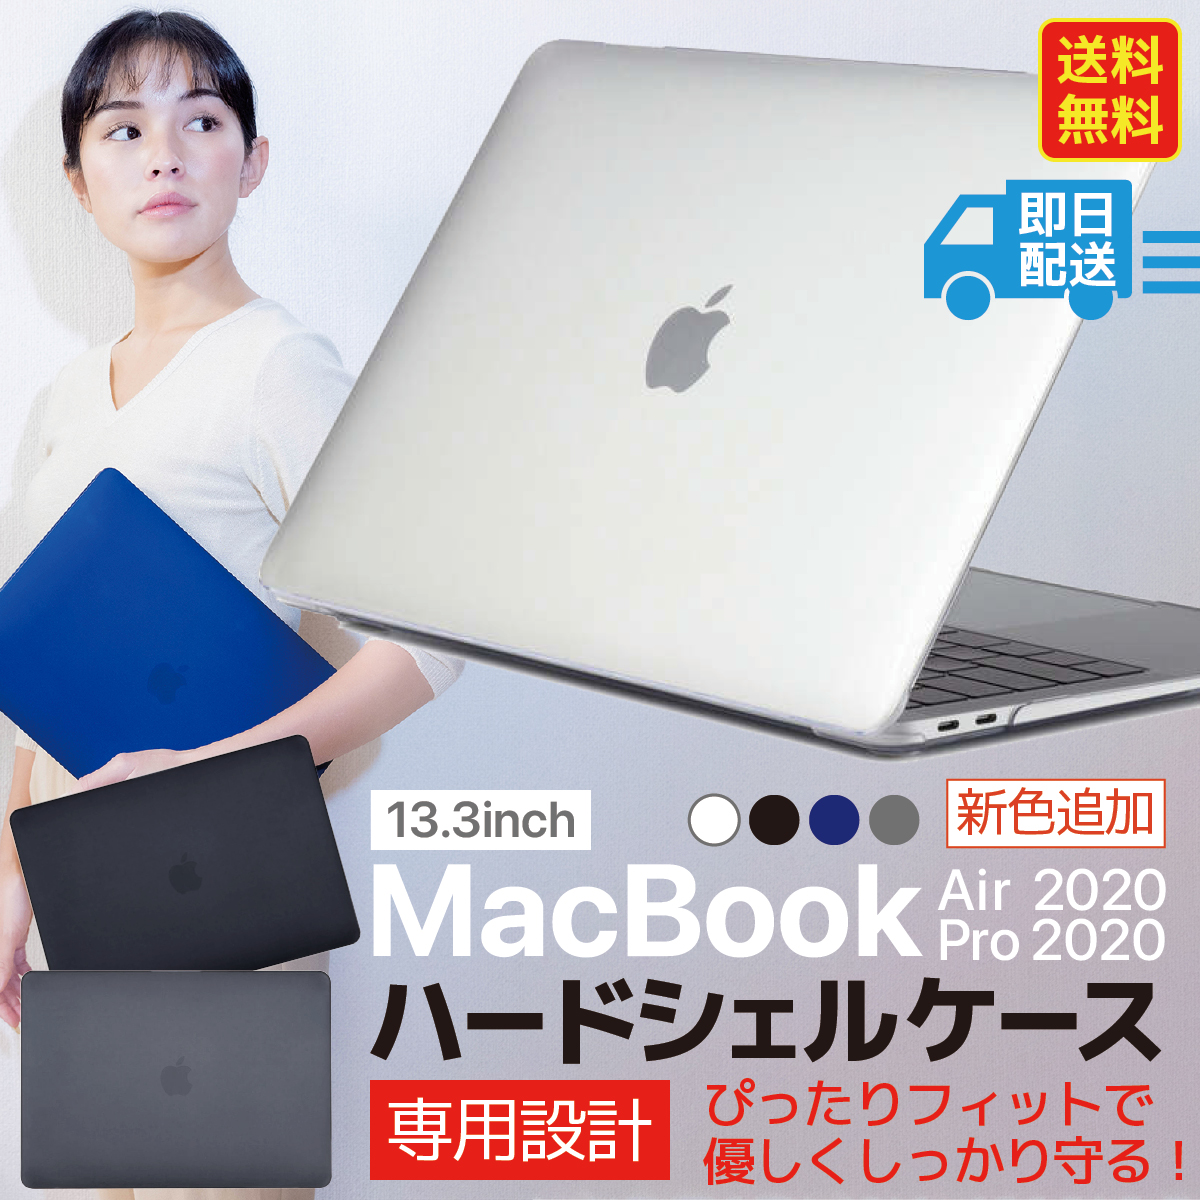 13.3inch 新色追加 MacBook Air 2020 Pro 2020 ハードシェルケース ぴったり フィット で 優しくしっかり守る 専用設計 